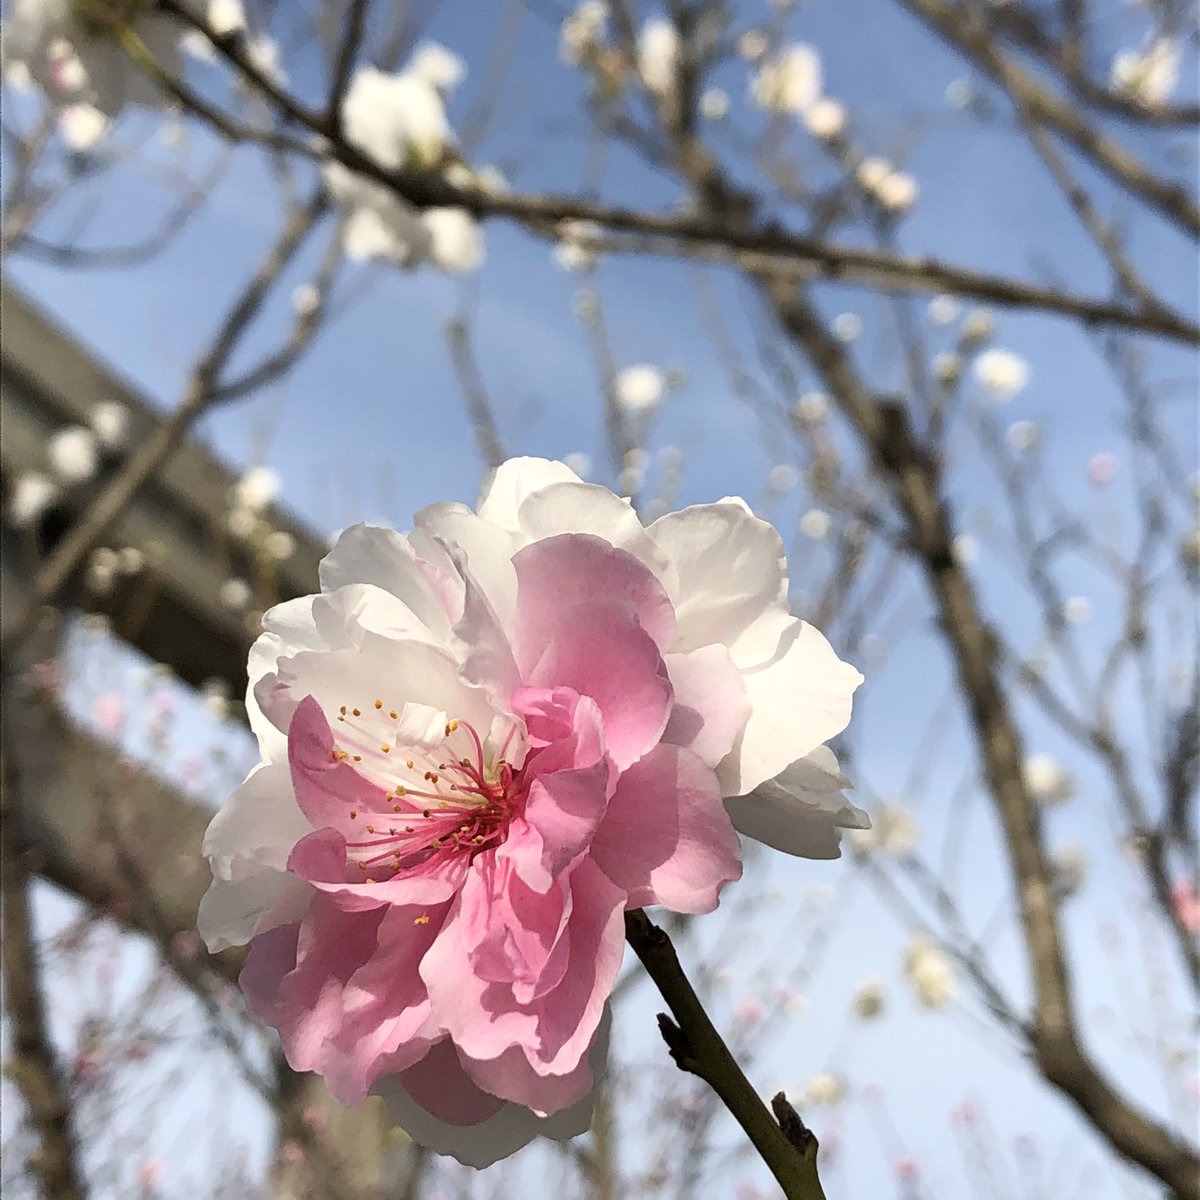 なんで同じ木に白とピンク咲くかな 不思議だな 花桃が見頃を迎えた地元近くの 萩岩睦美のイラスト